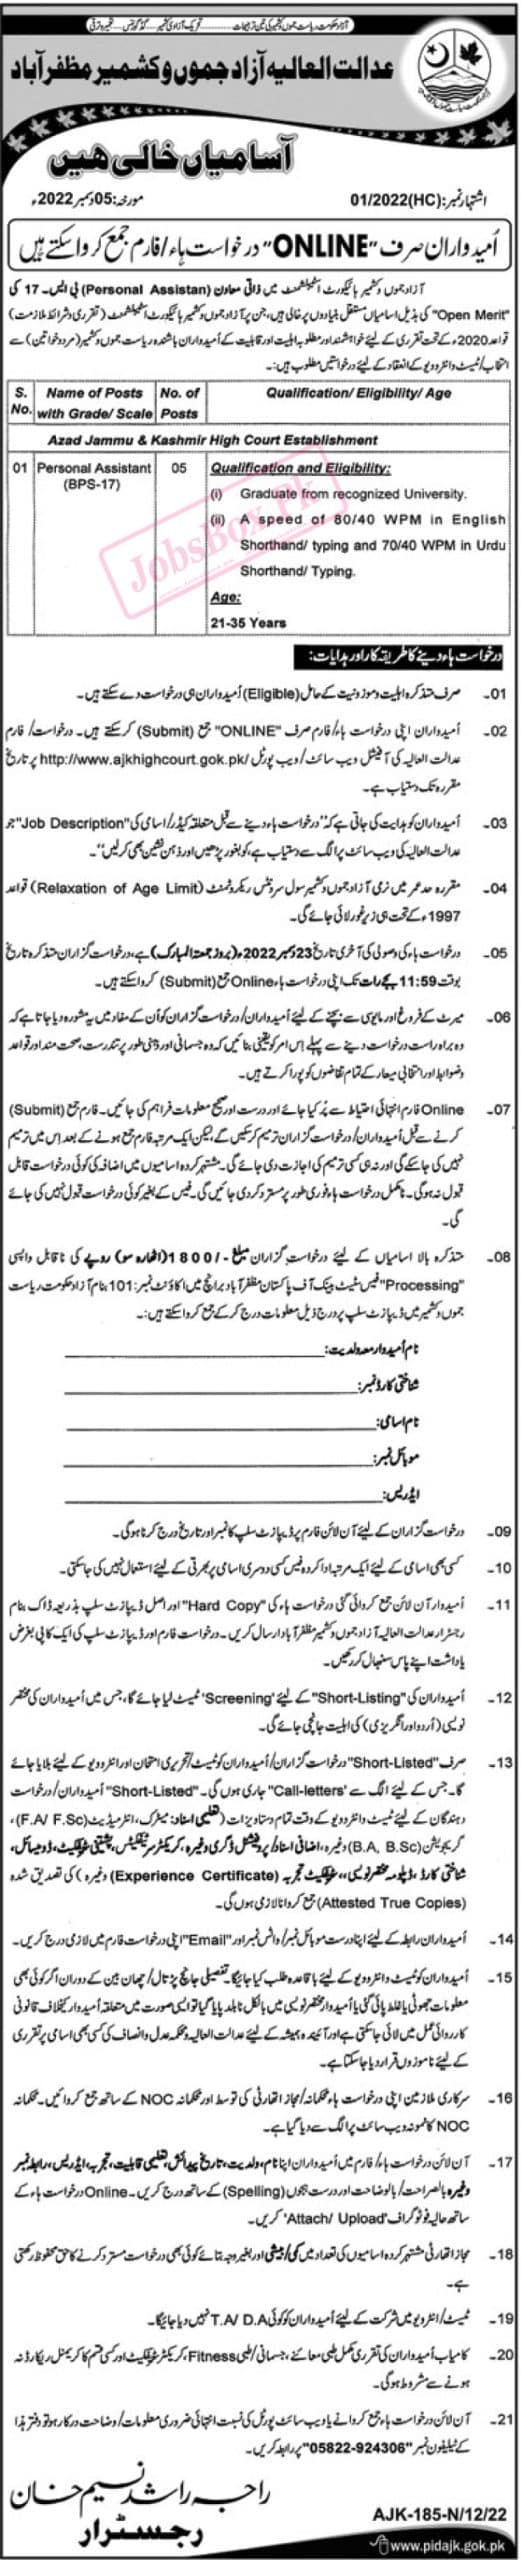 AJK High Court Jobs 2022 - Online Form at www.ajkhighcourt.gok.pk